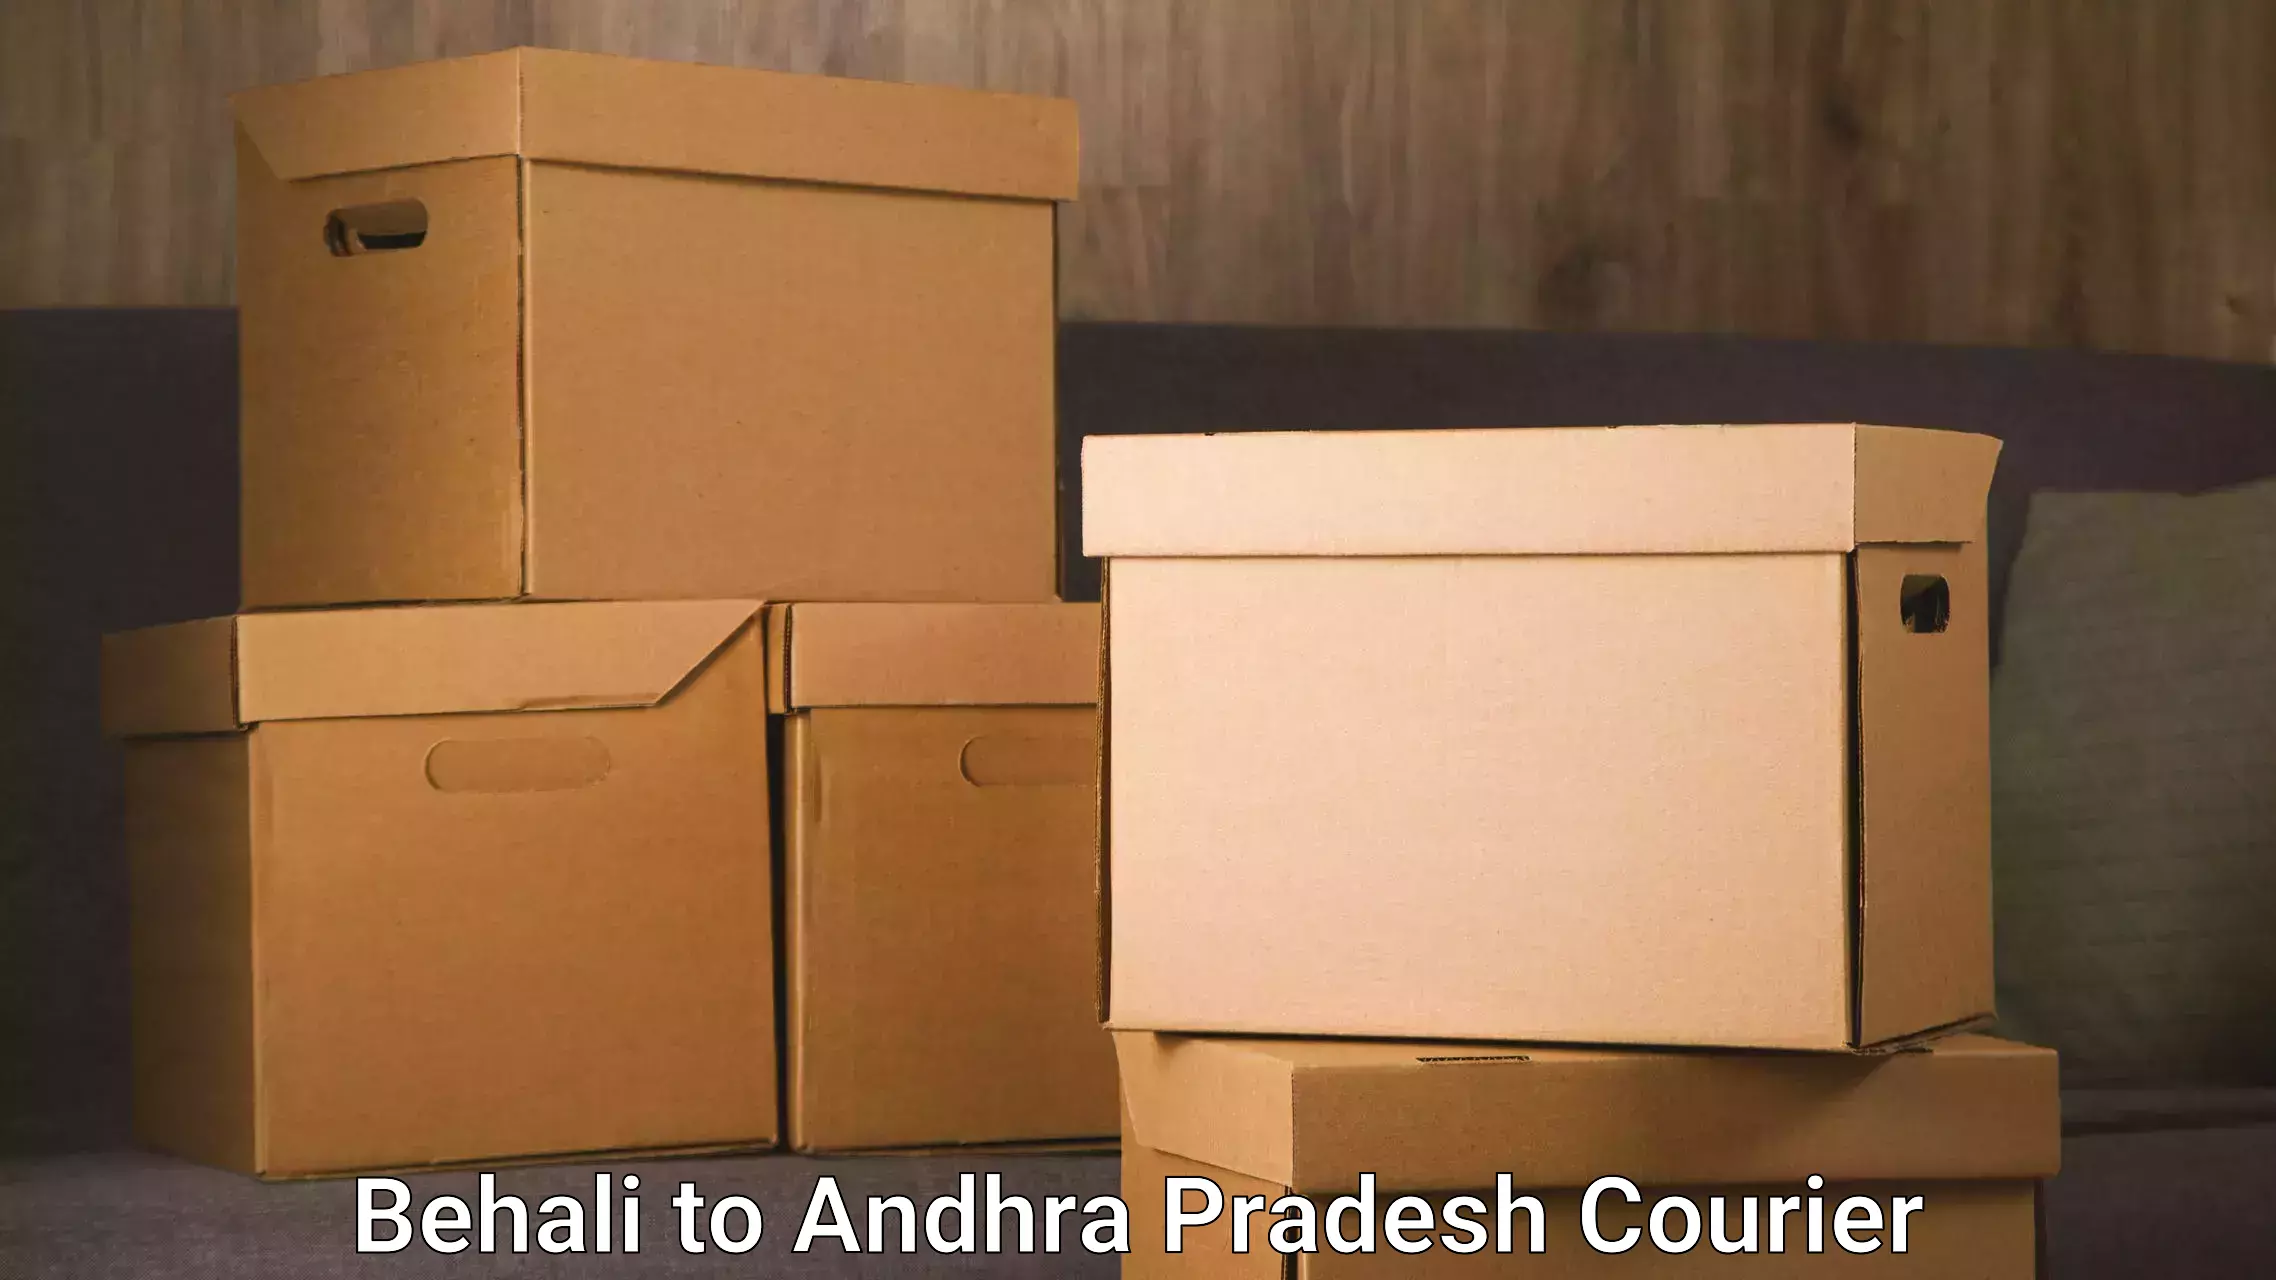 Next-generation courier services Behali to Devarapalli